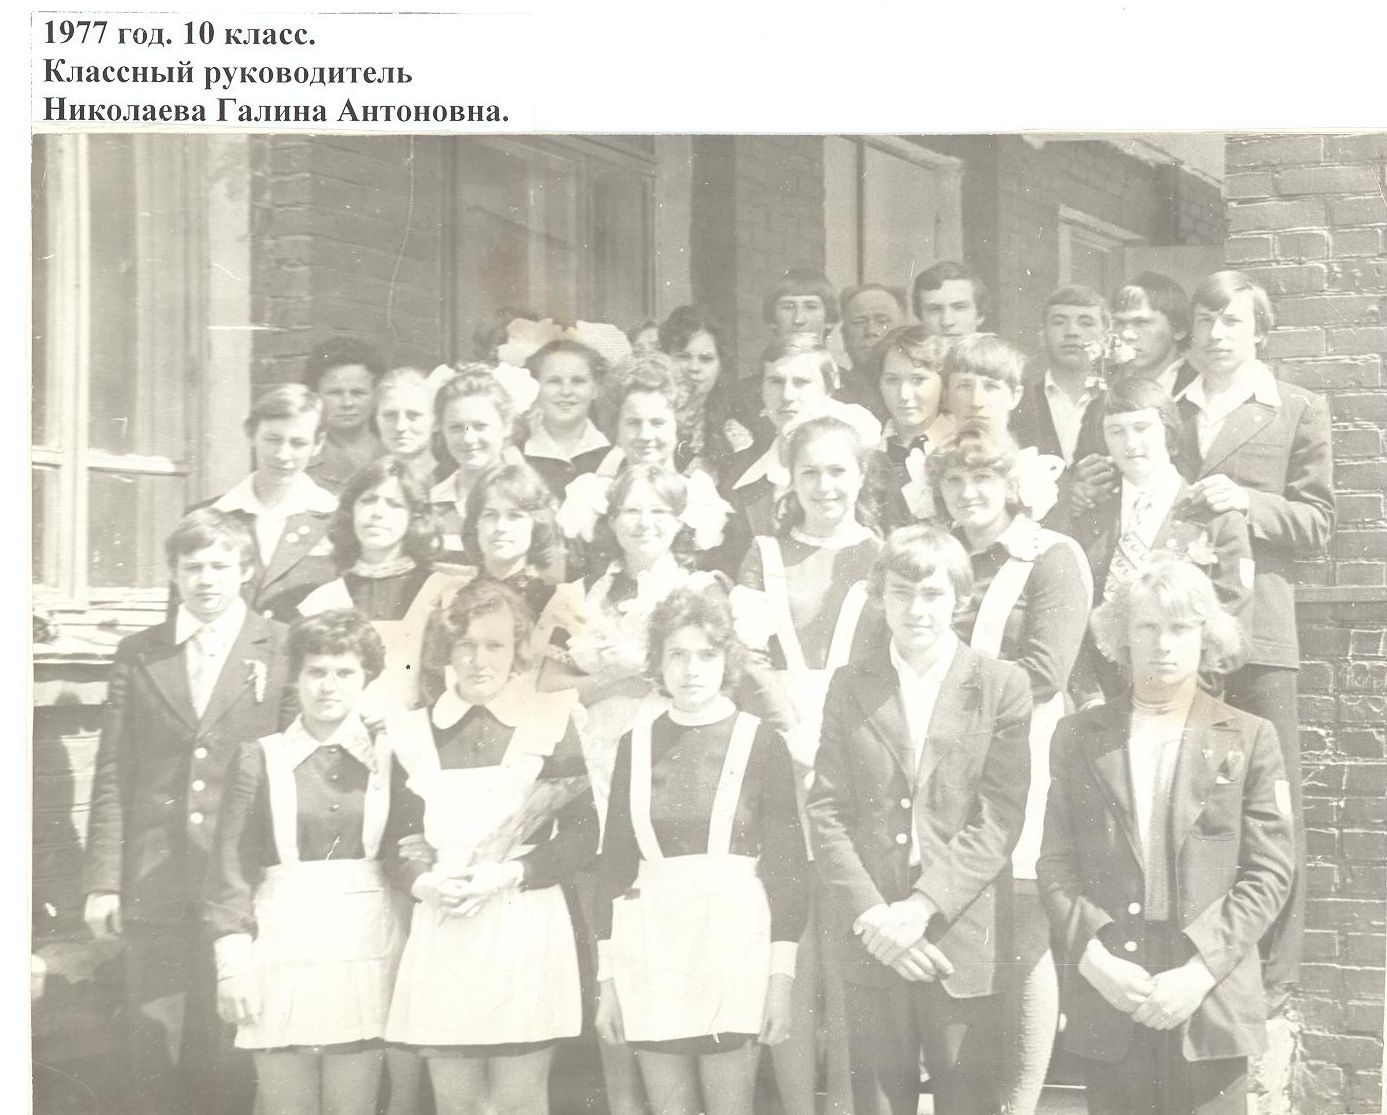 1997 год школа 16 Кемерово